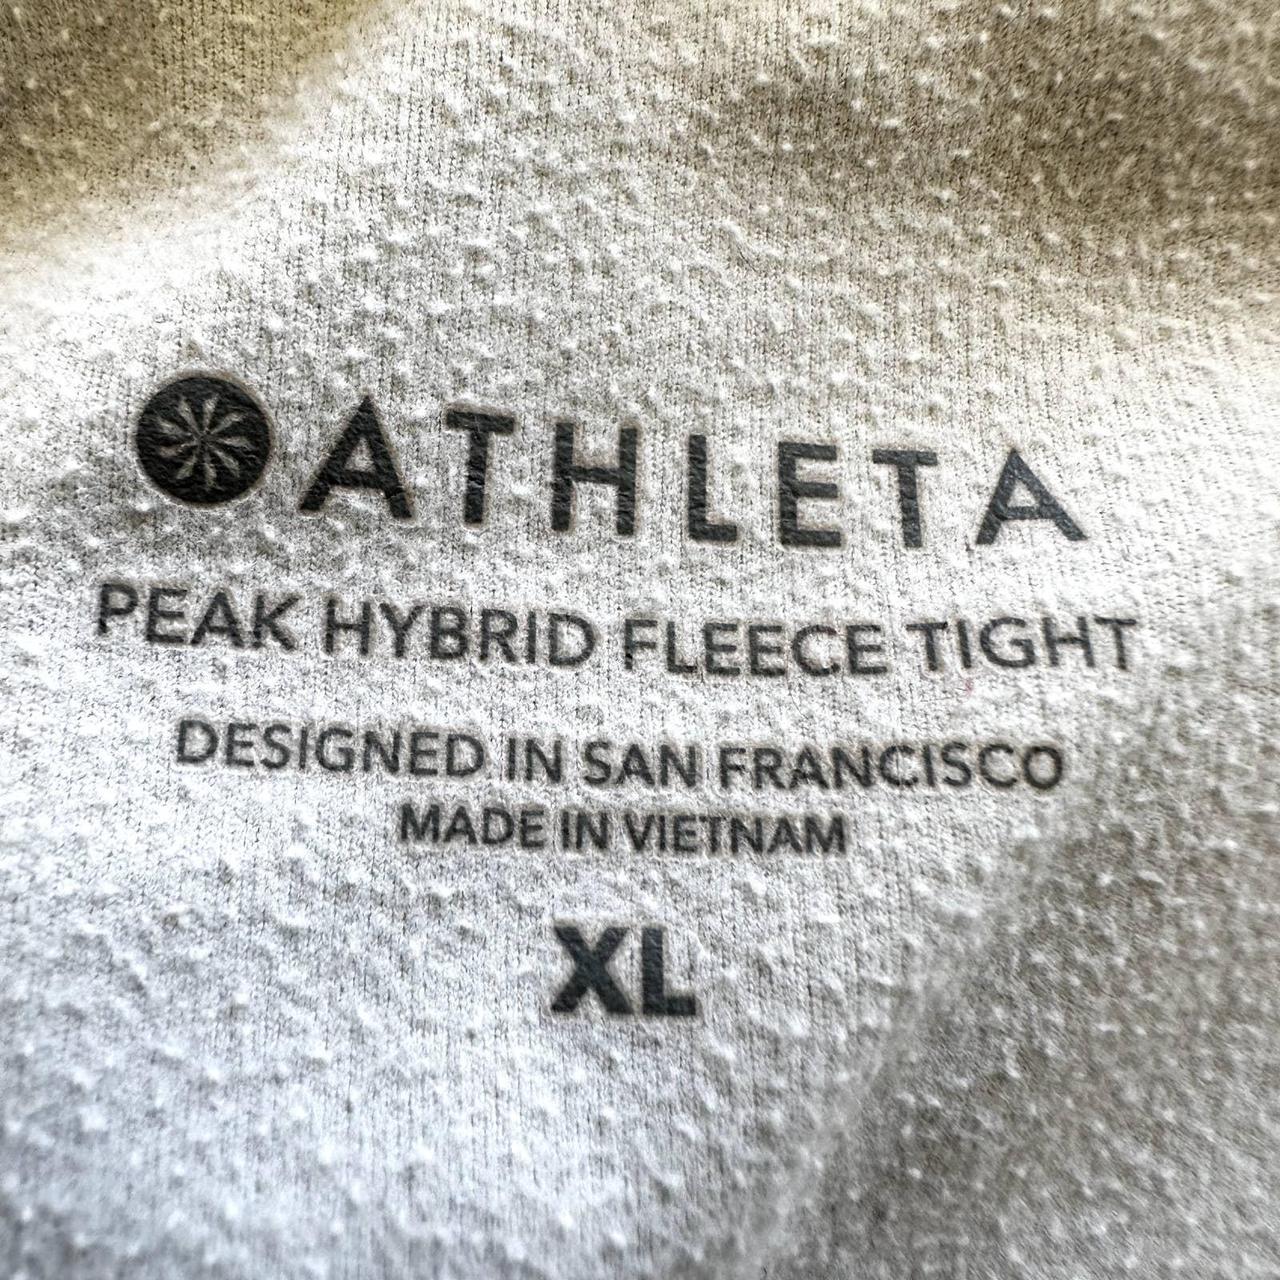 Athleta Peak Hybrid Fleece Tights